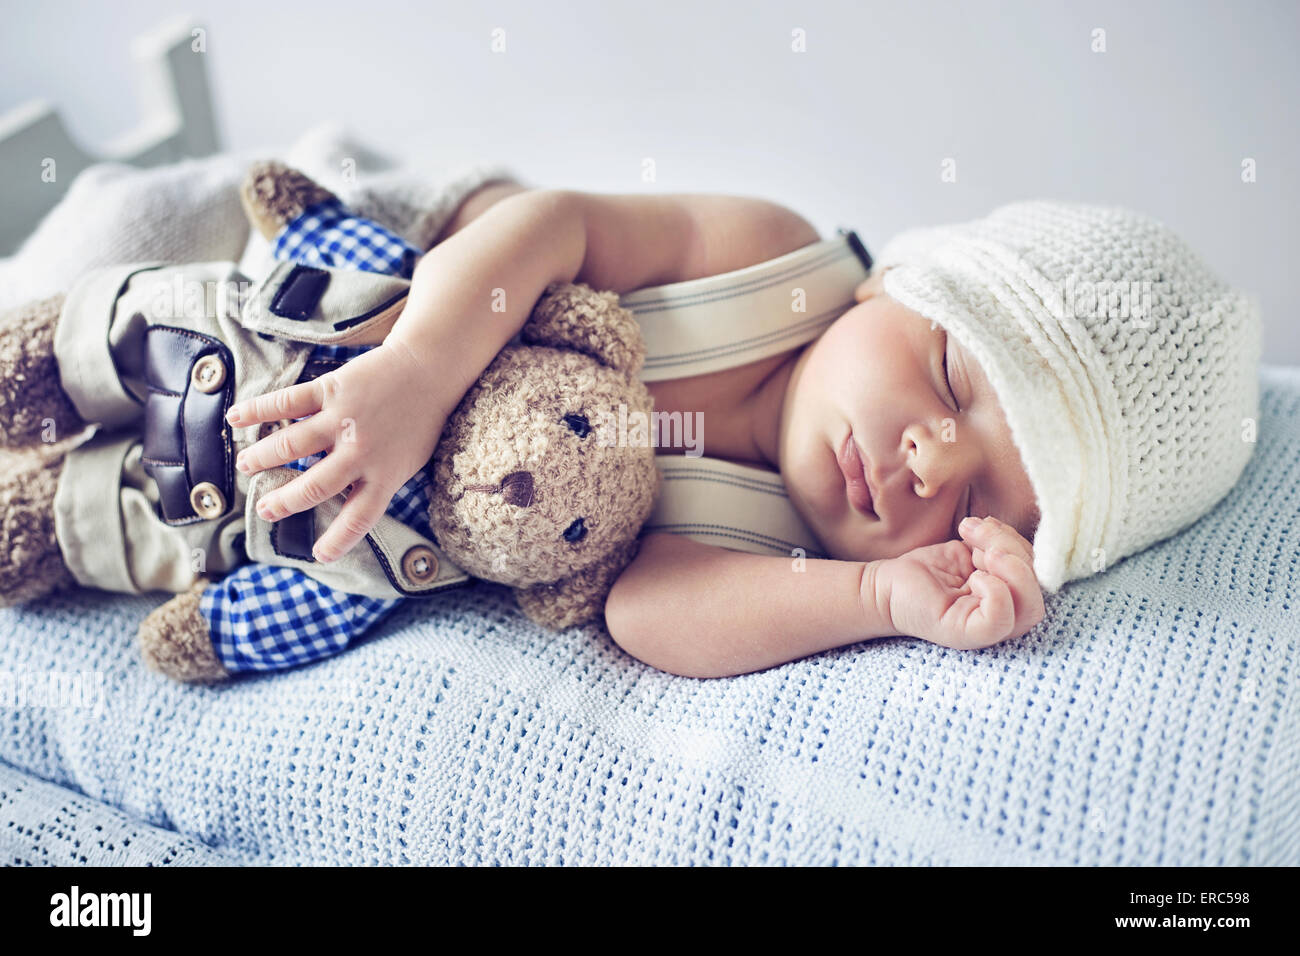 Le nouveau-né de dormir avec un ours en peluche jouet Banque D'Images